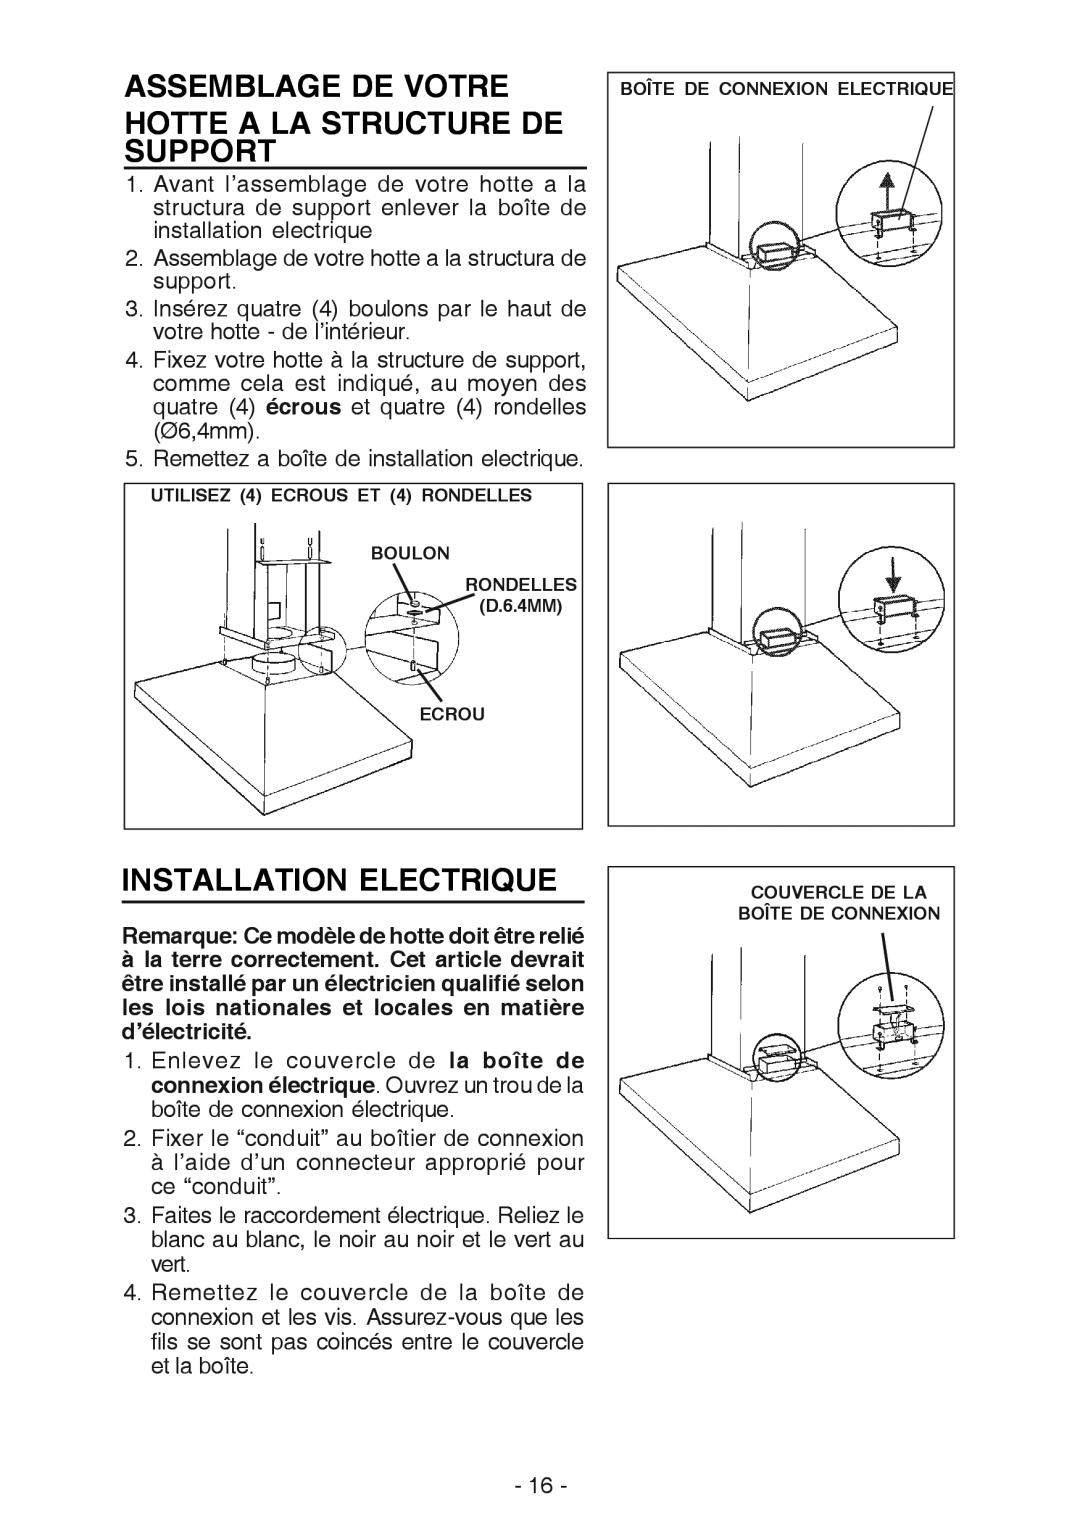 NuTone NP63000 manual Assemblage De Votre Hotte A La Structure De Support, Installation Electrique 